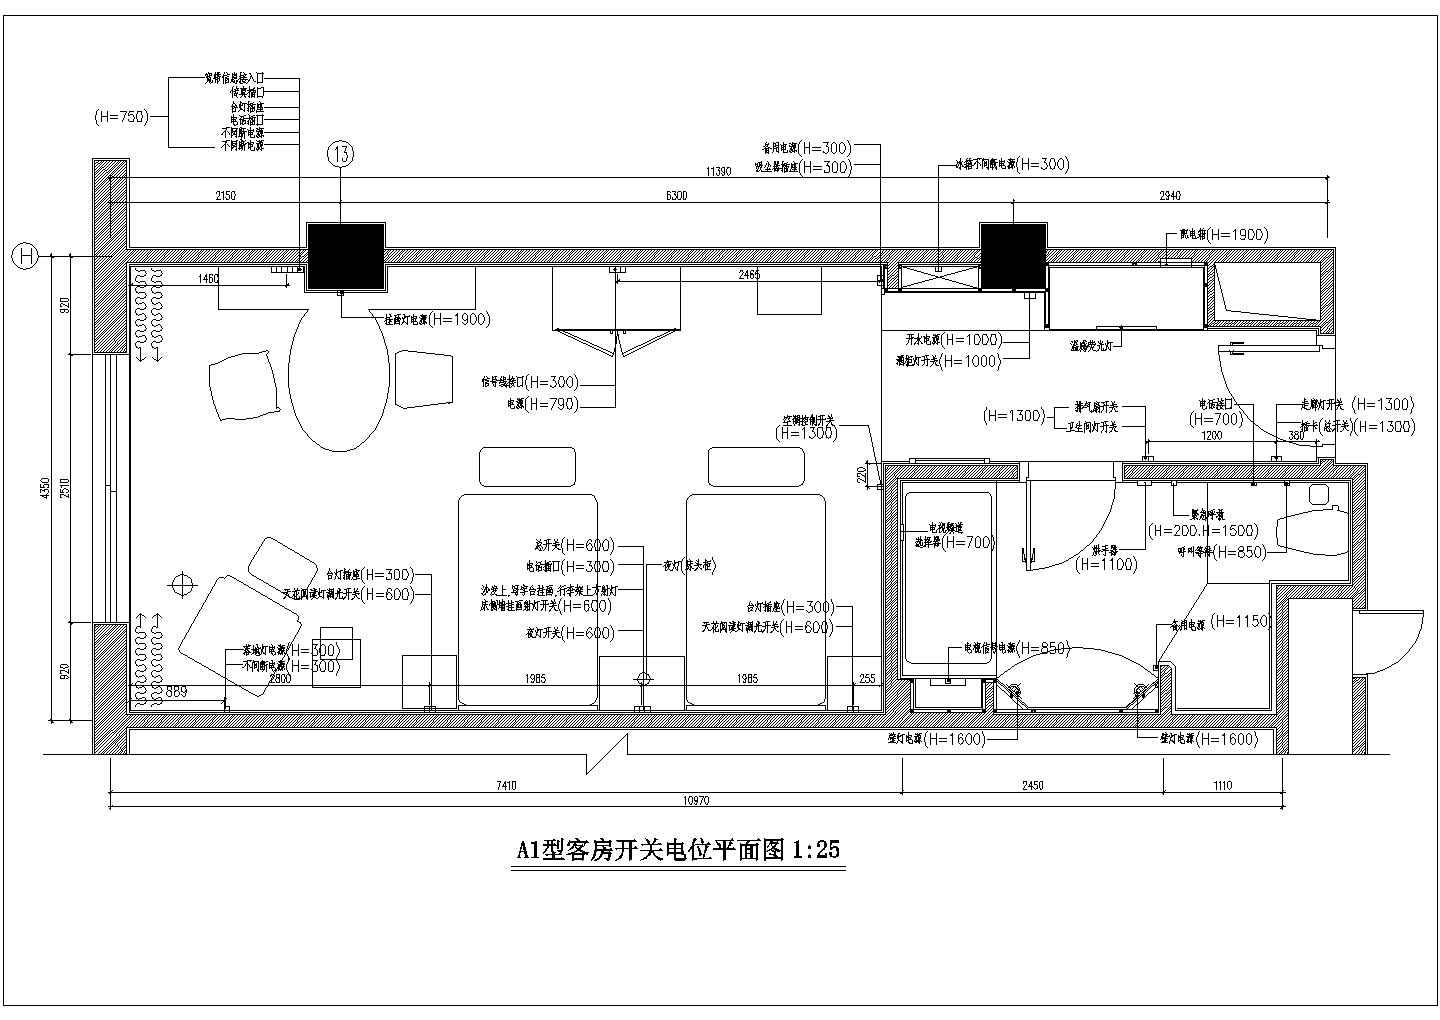 锦州大酒店客房样板装修详细建筑施工图